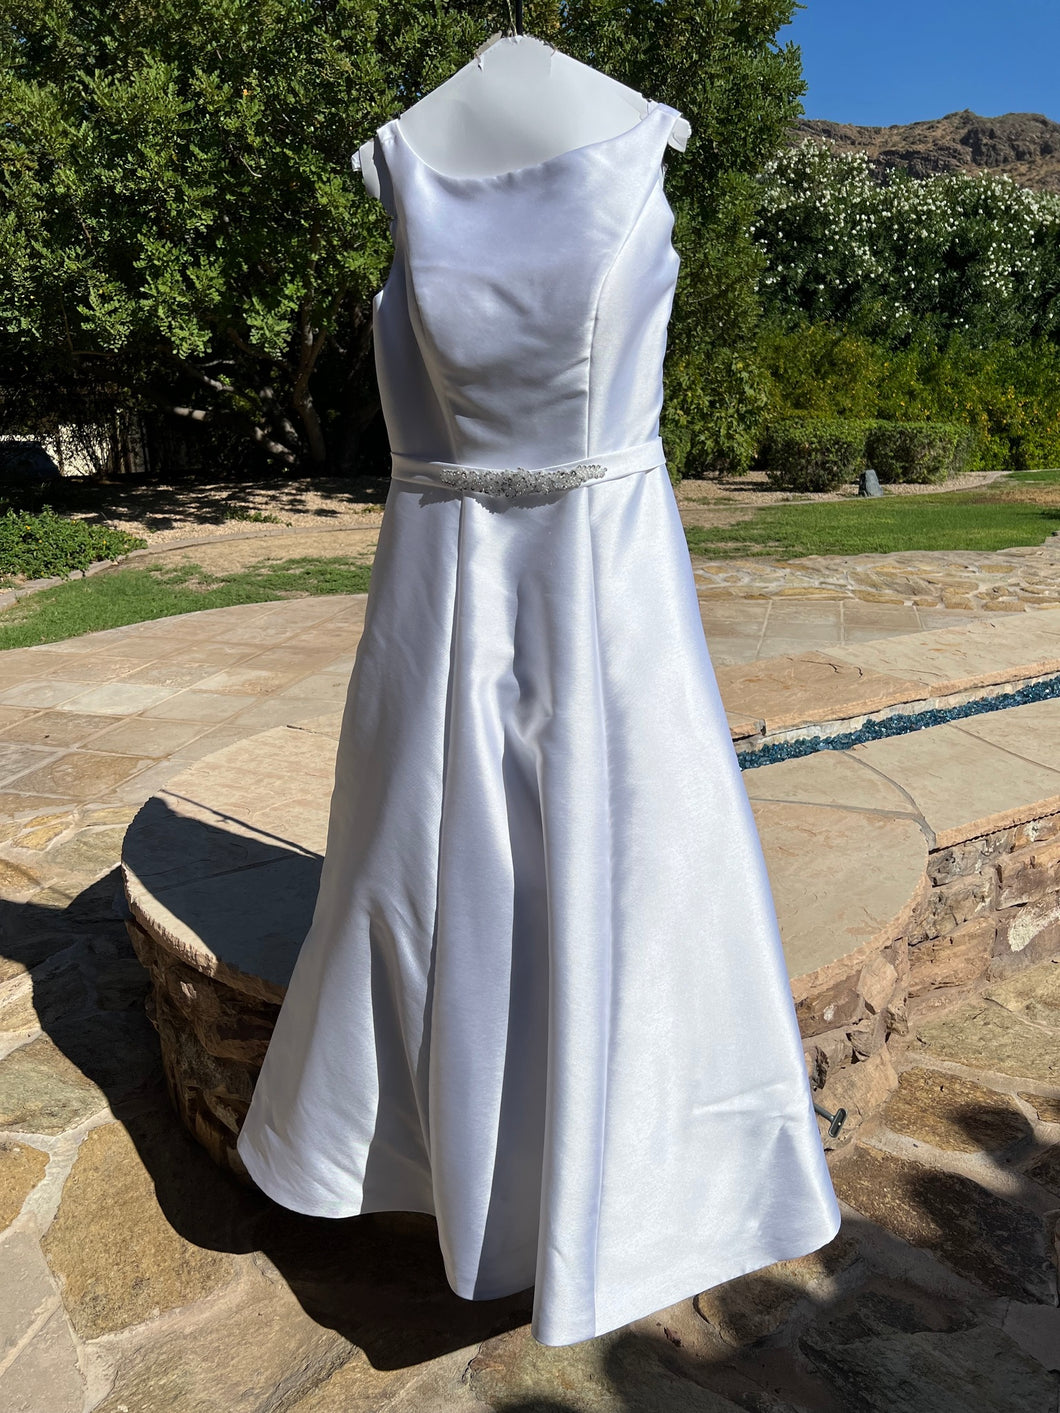 Mia Solano 'M1804Z' wedding dress size-12 PREOWNED